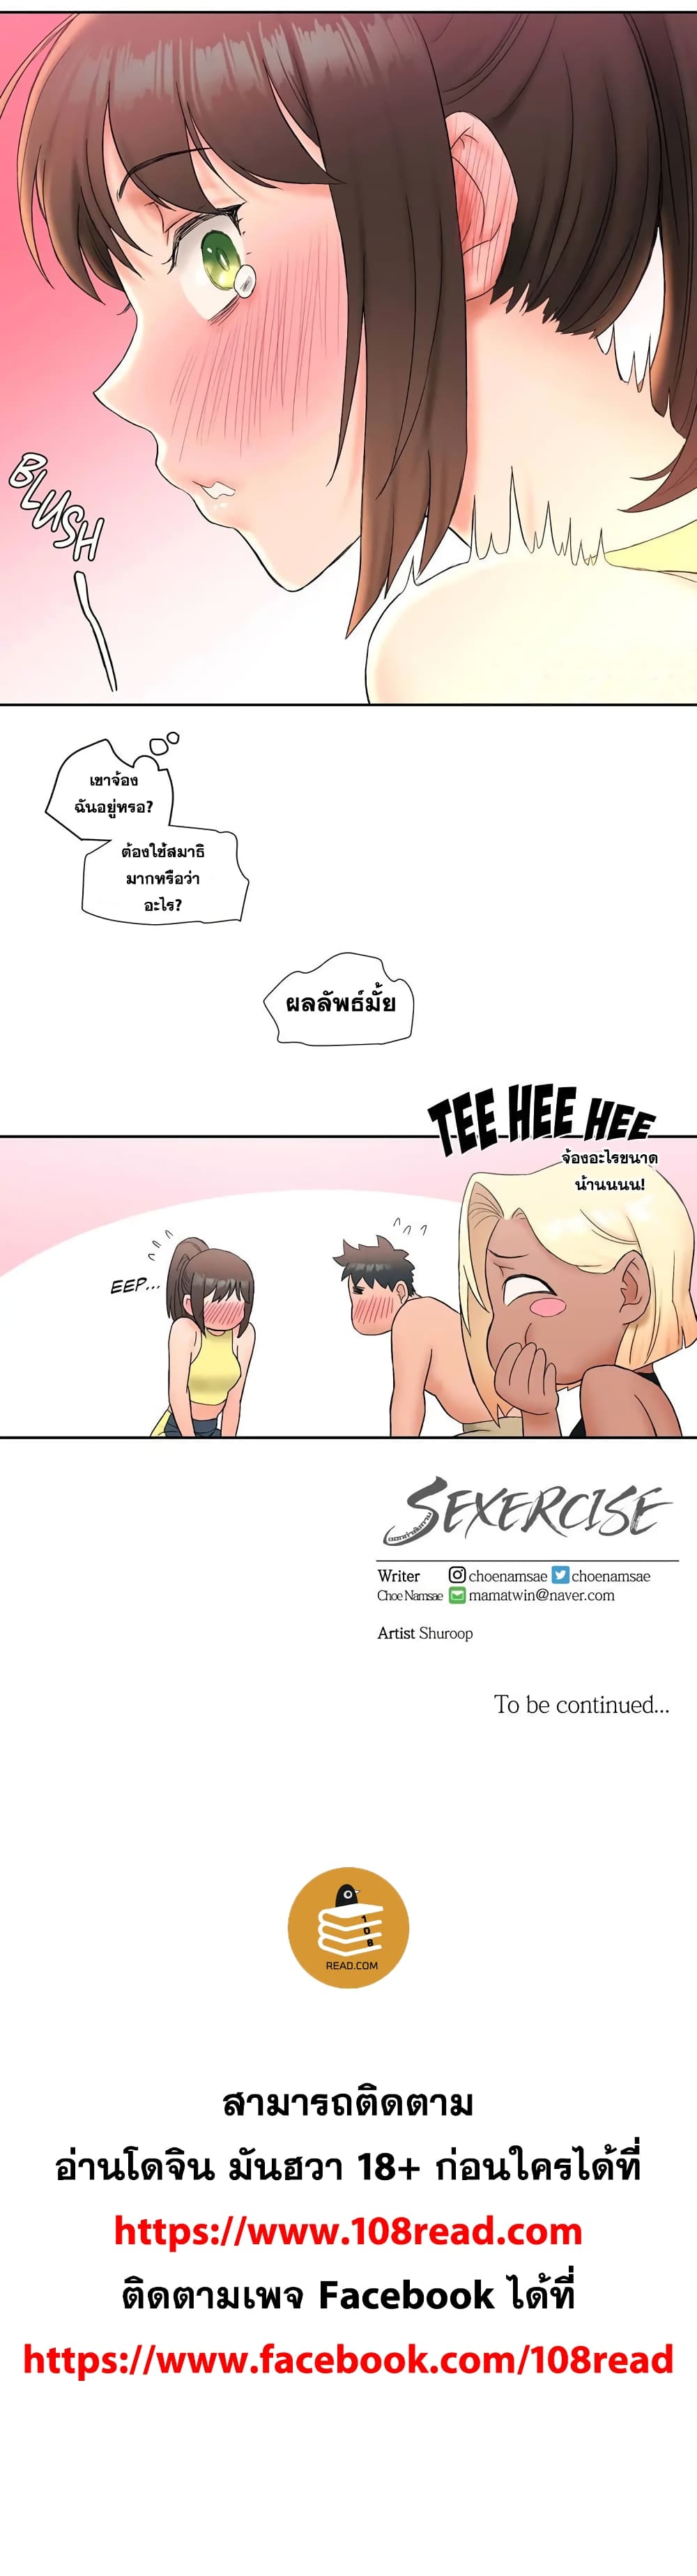 Sexercise 12 15